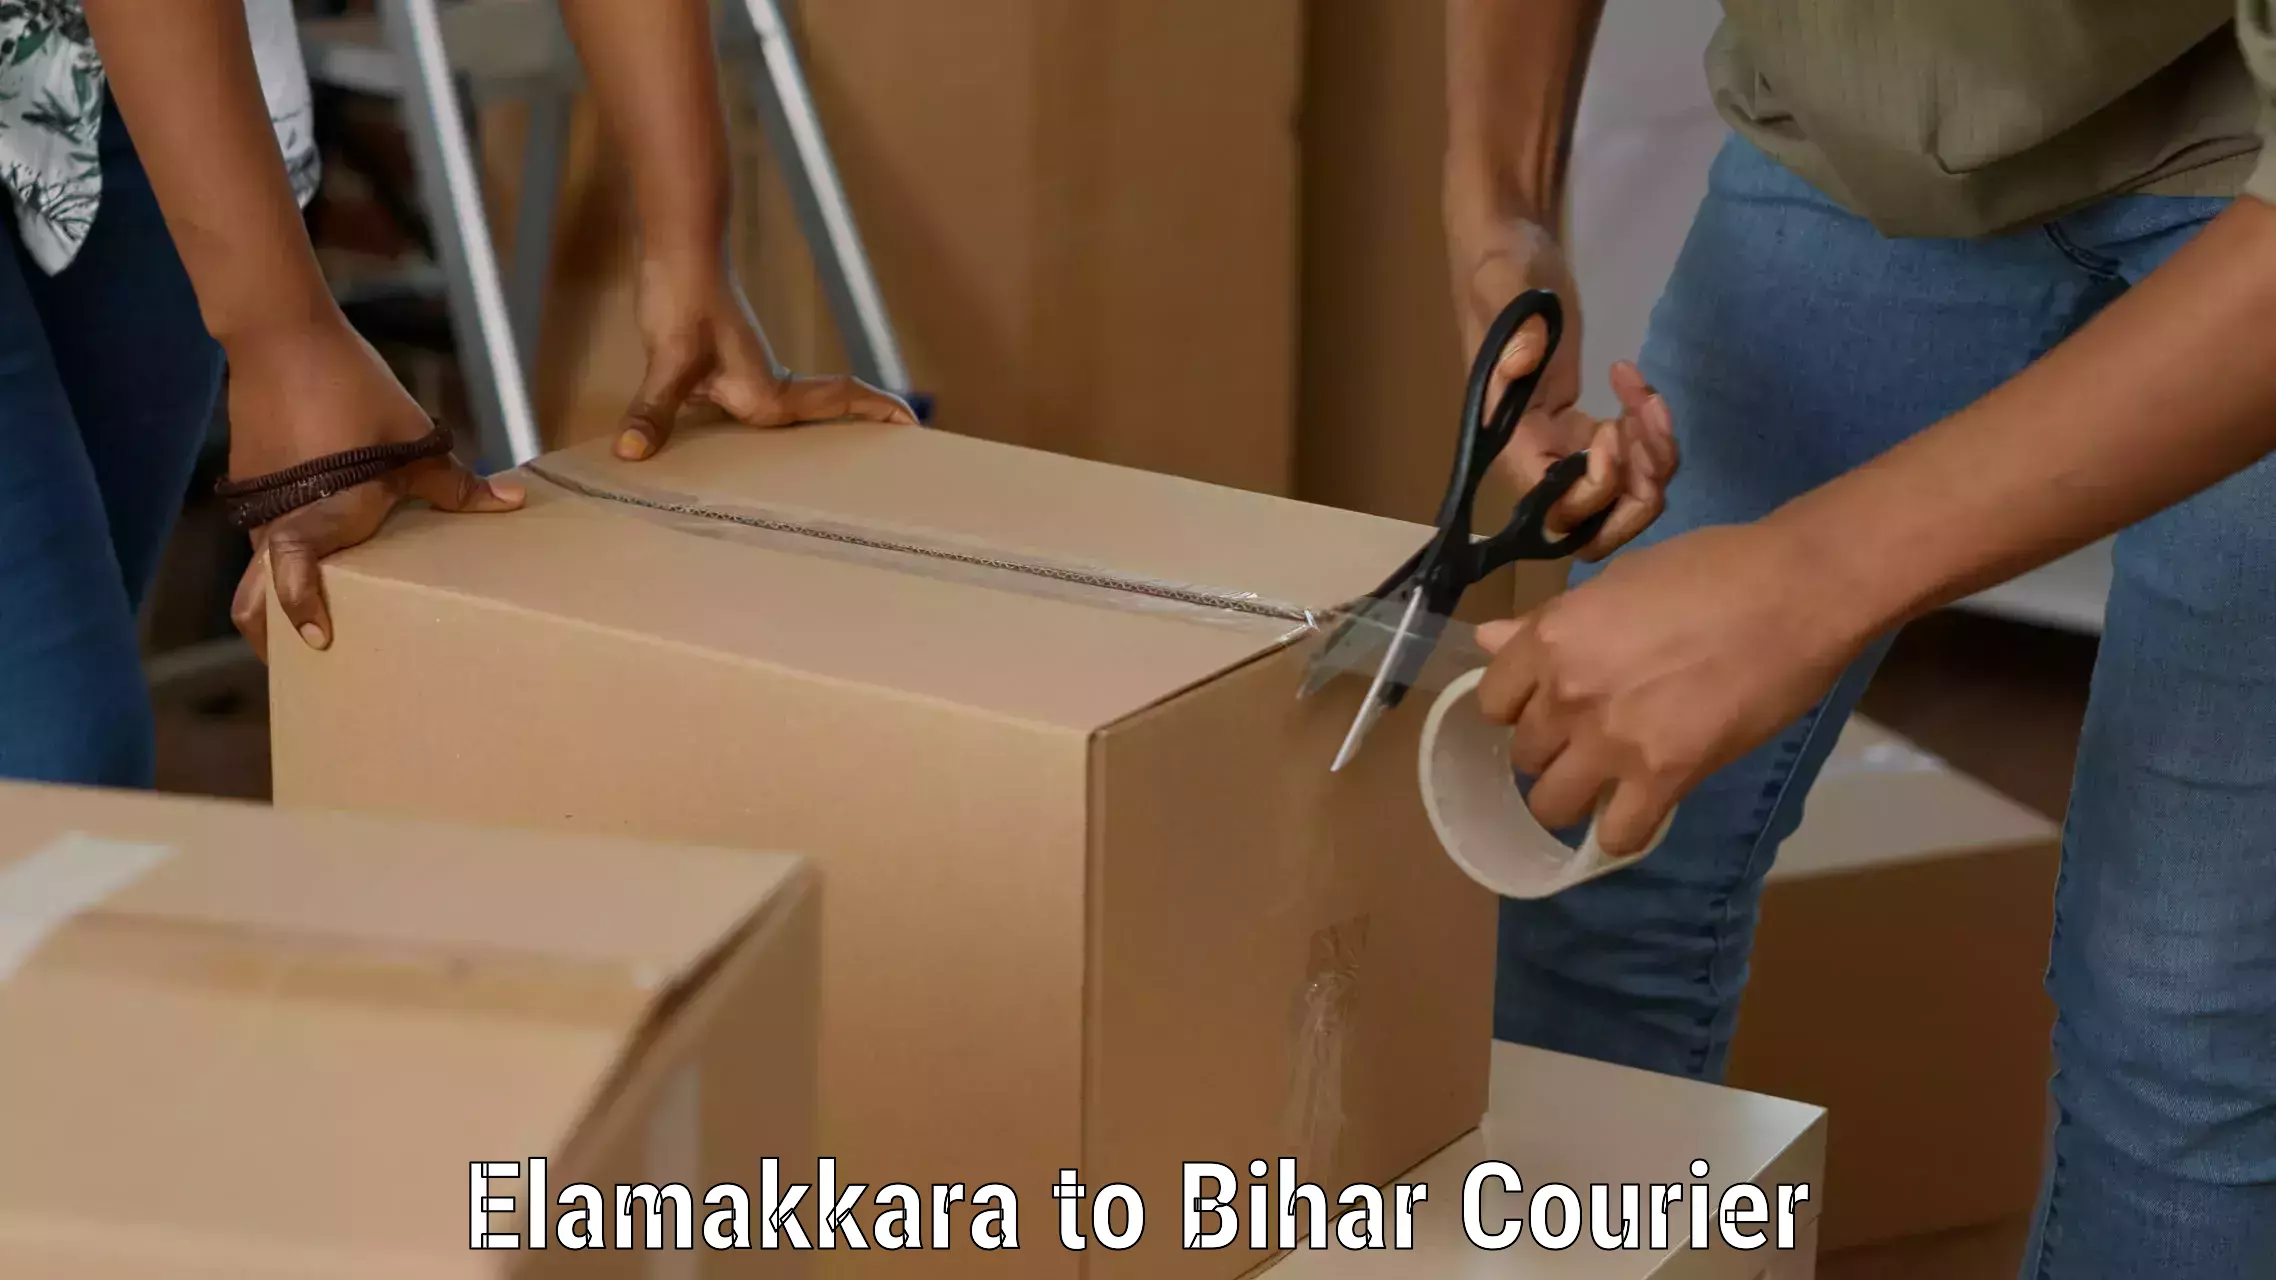 Courier service comparison Elamakkara to Barhiya